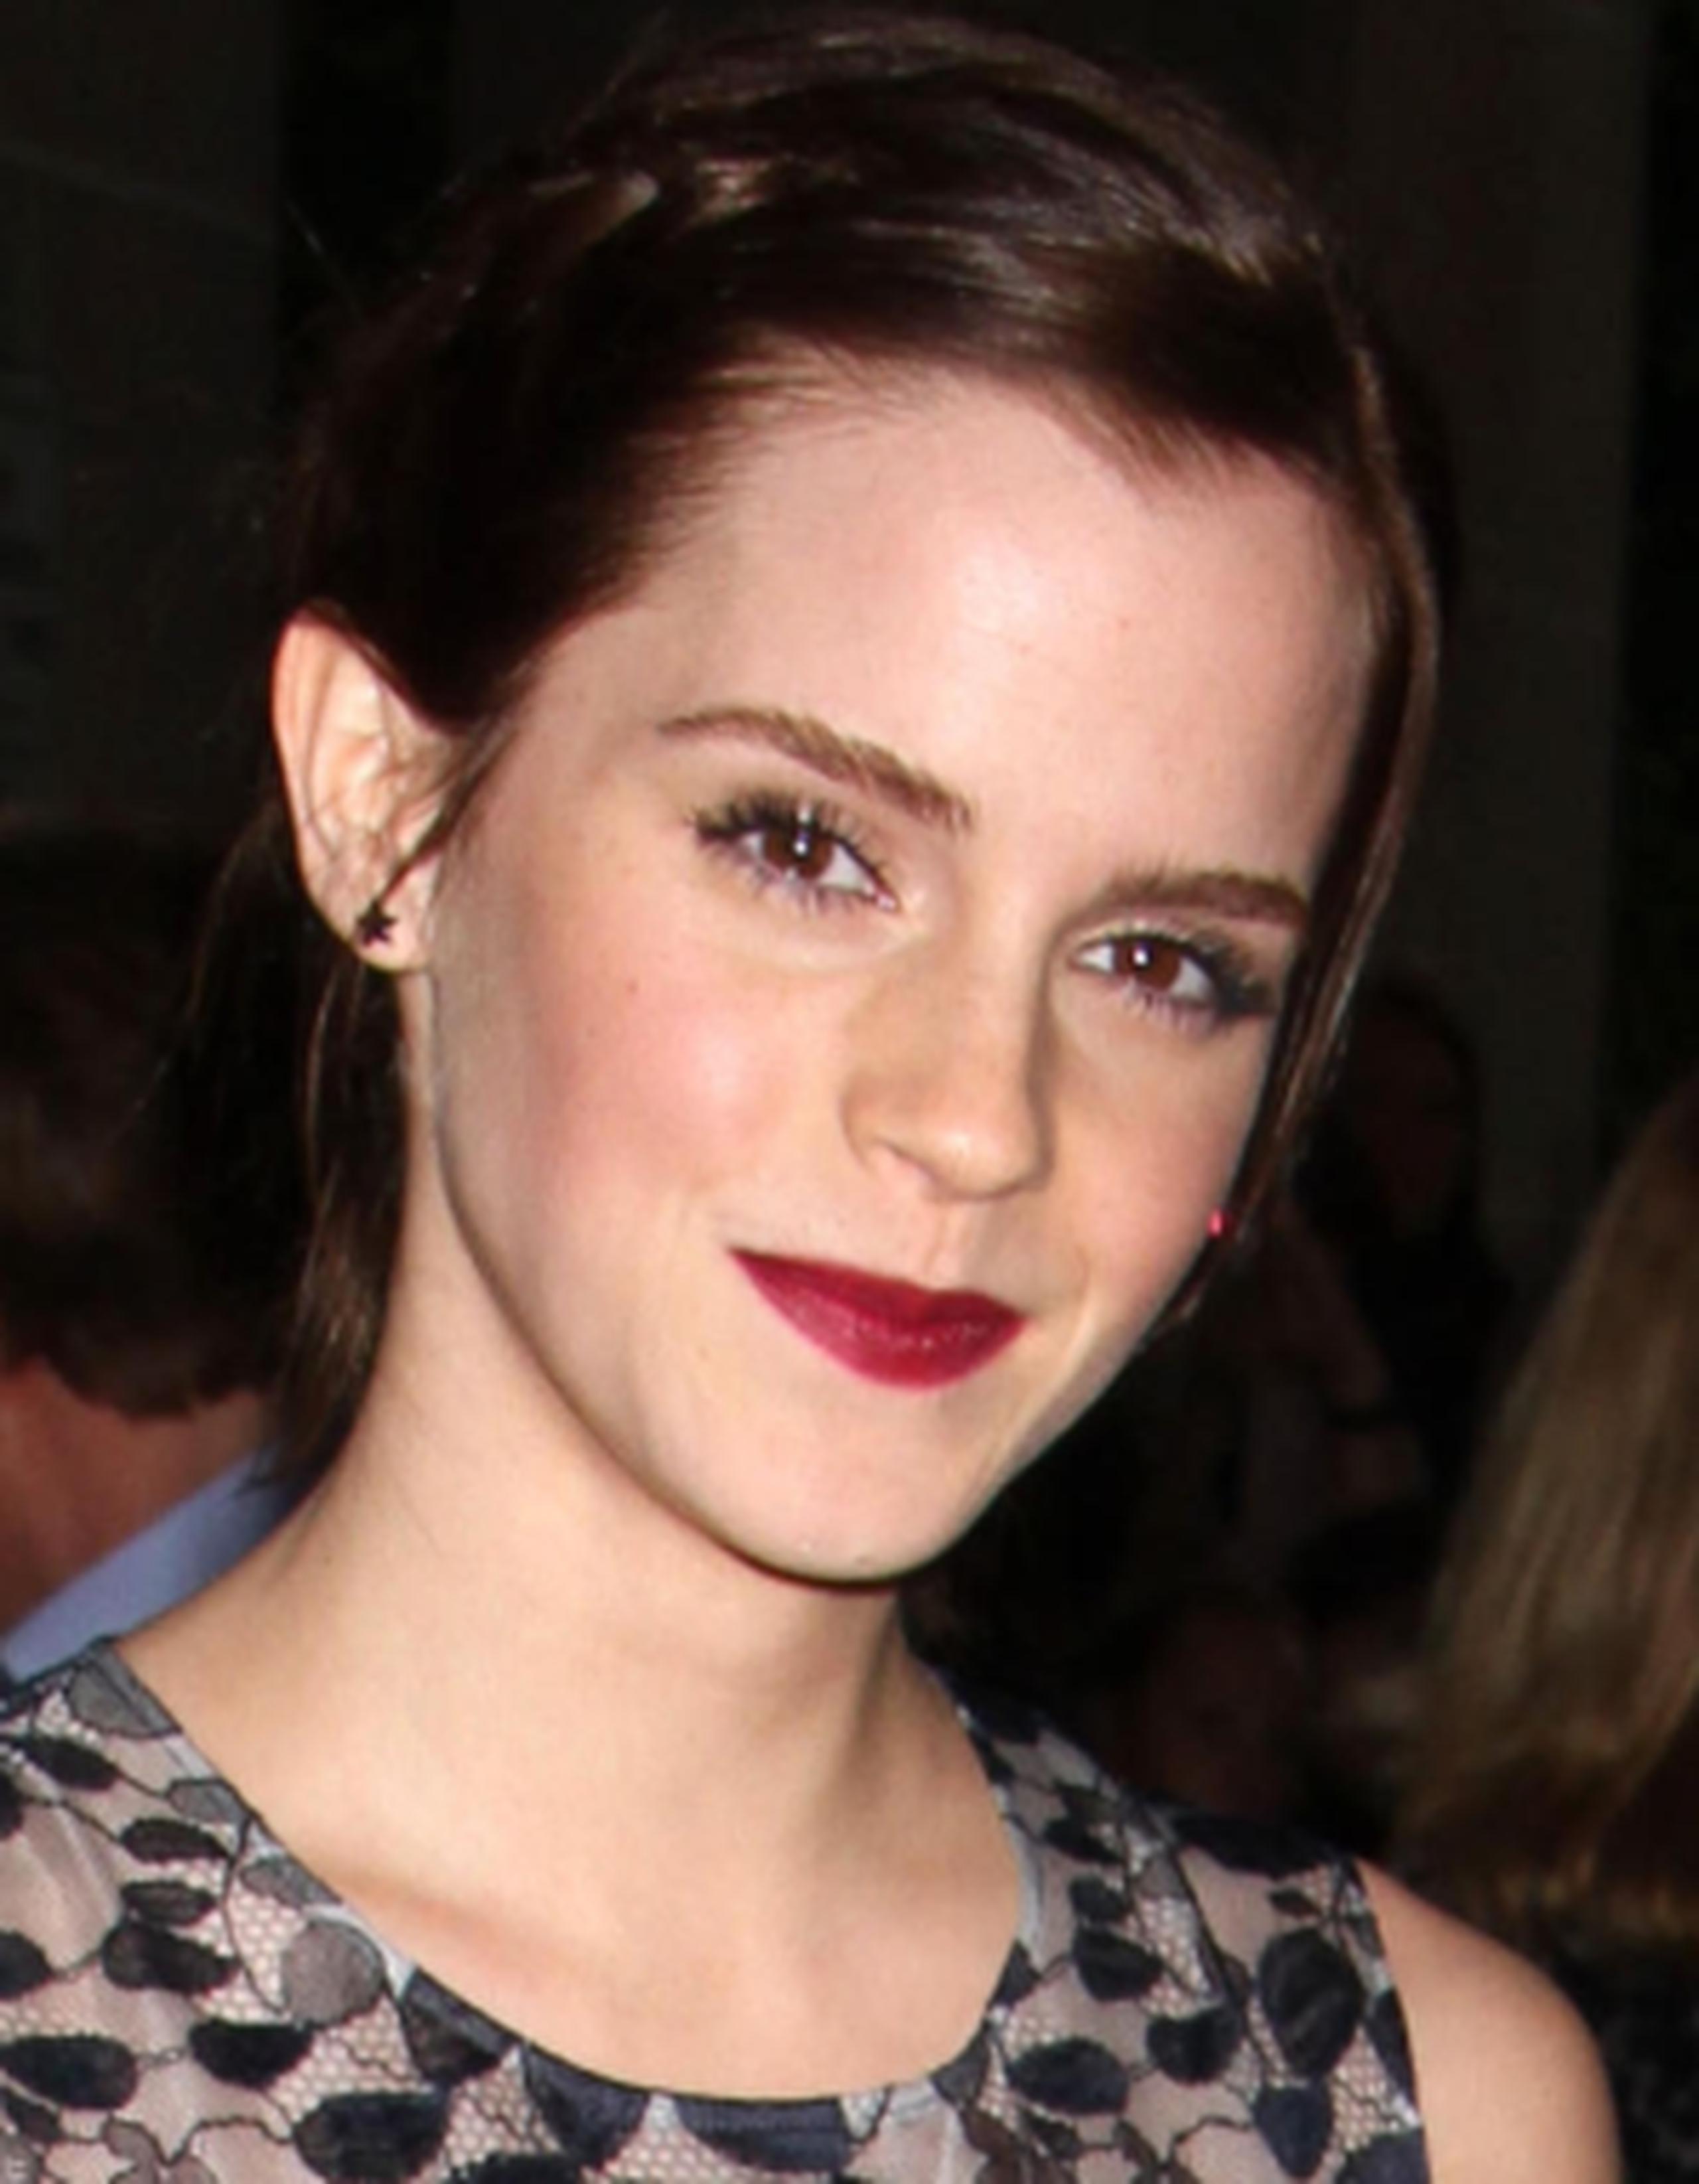 La actriz Emma Watson protagonizará "50 sombras de Grey", según documentos hackeados por Anonymous.(Archivo)